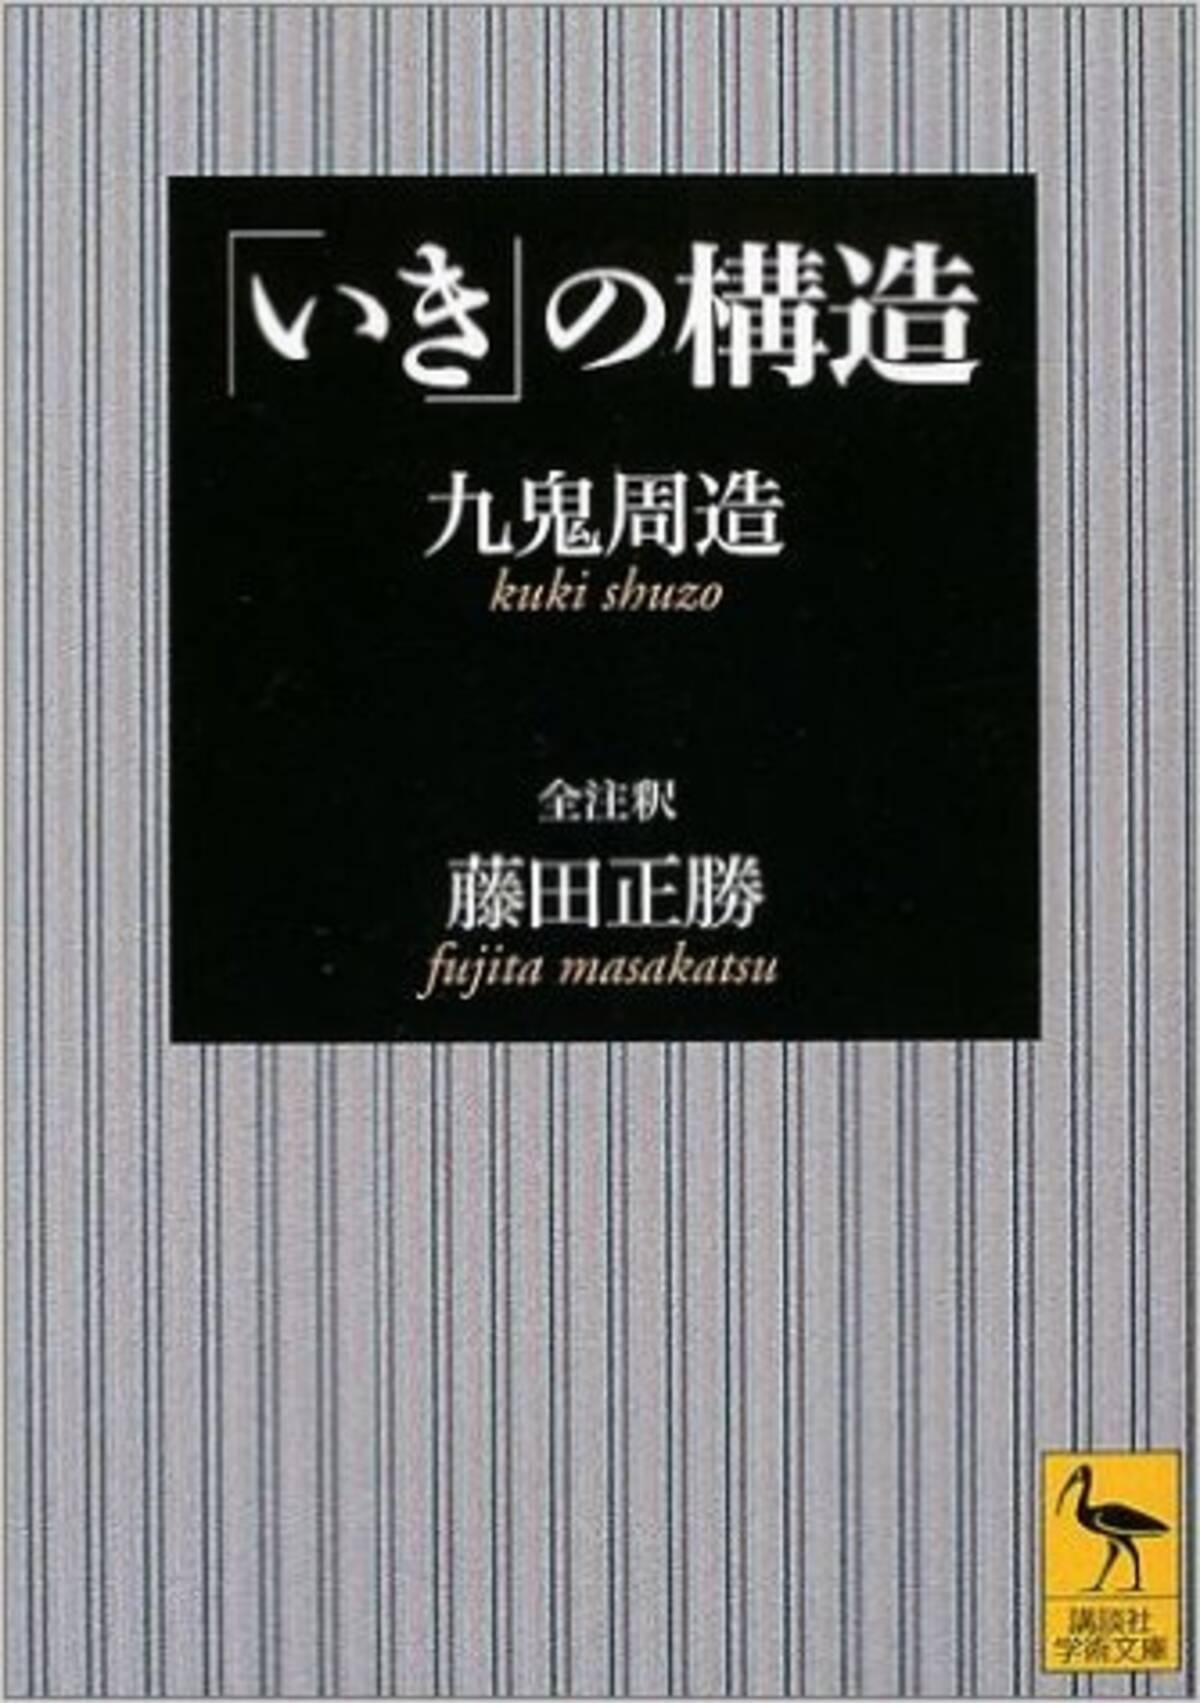 いき の構造 の哲学者 九鬼周造は日本語ラップの出発点だったyo エキサイトニュース